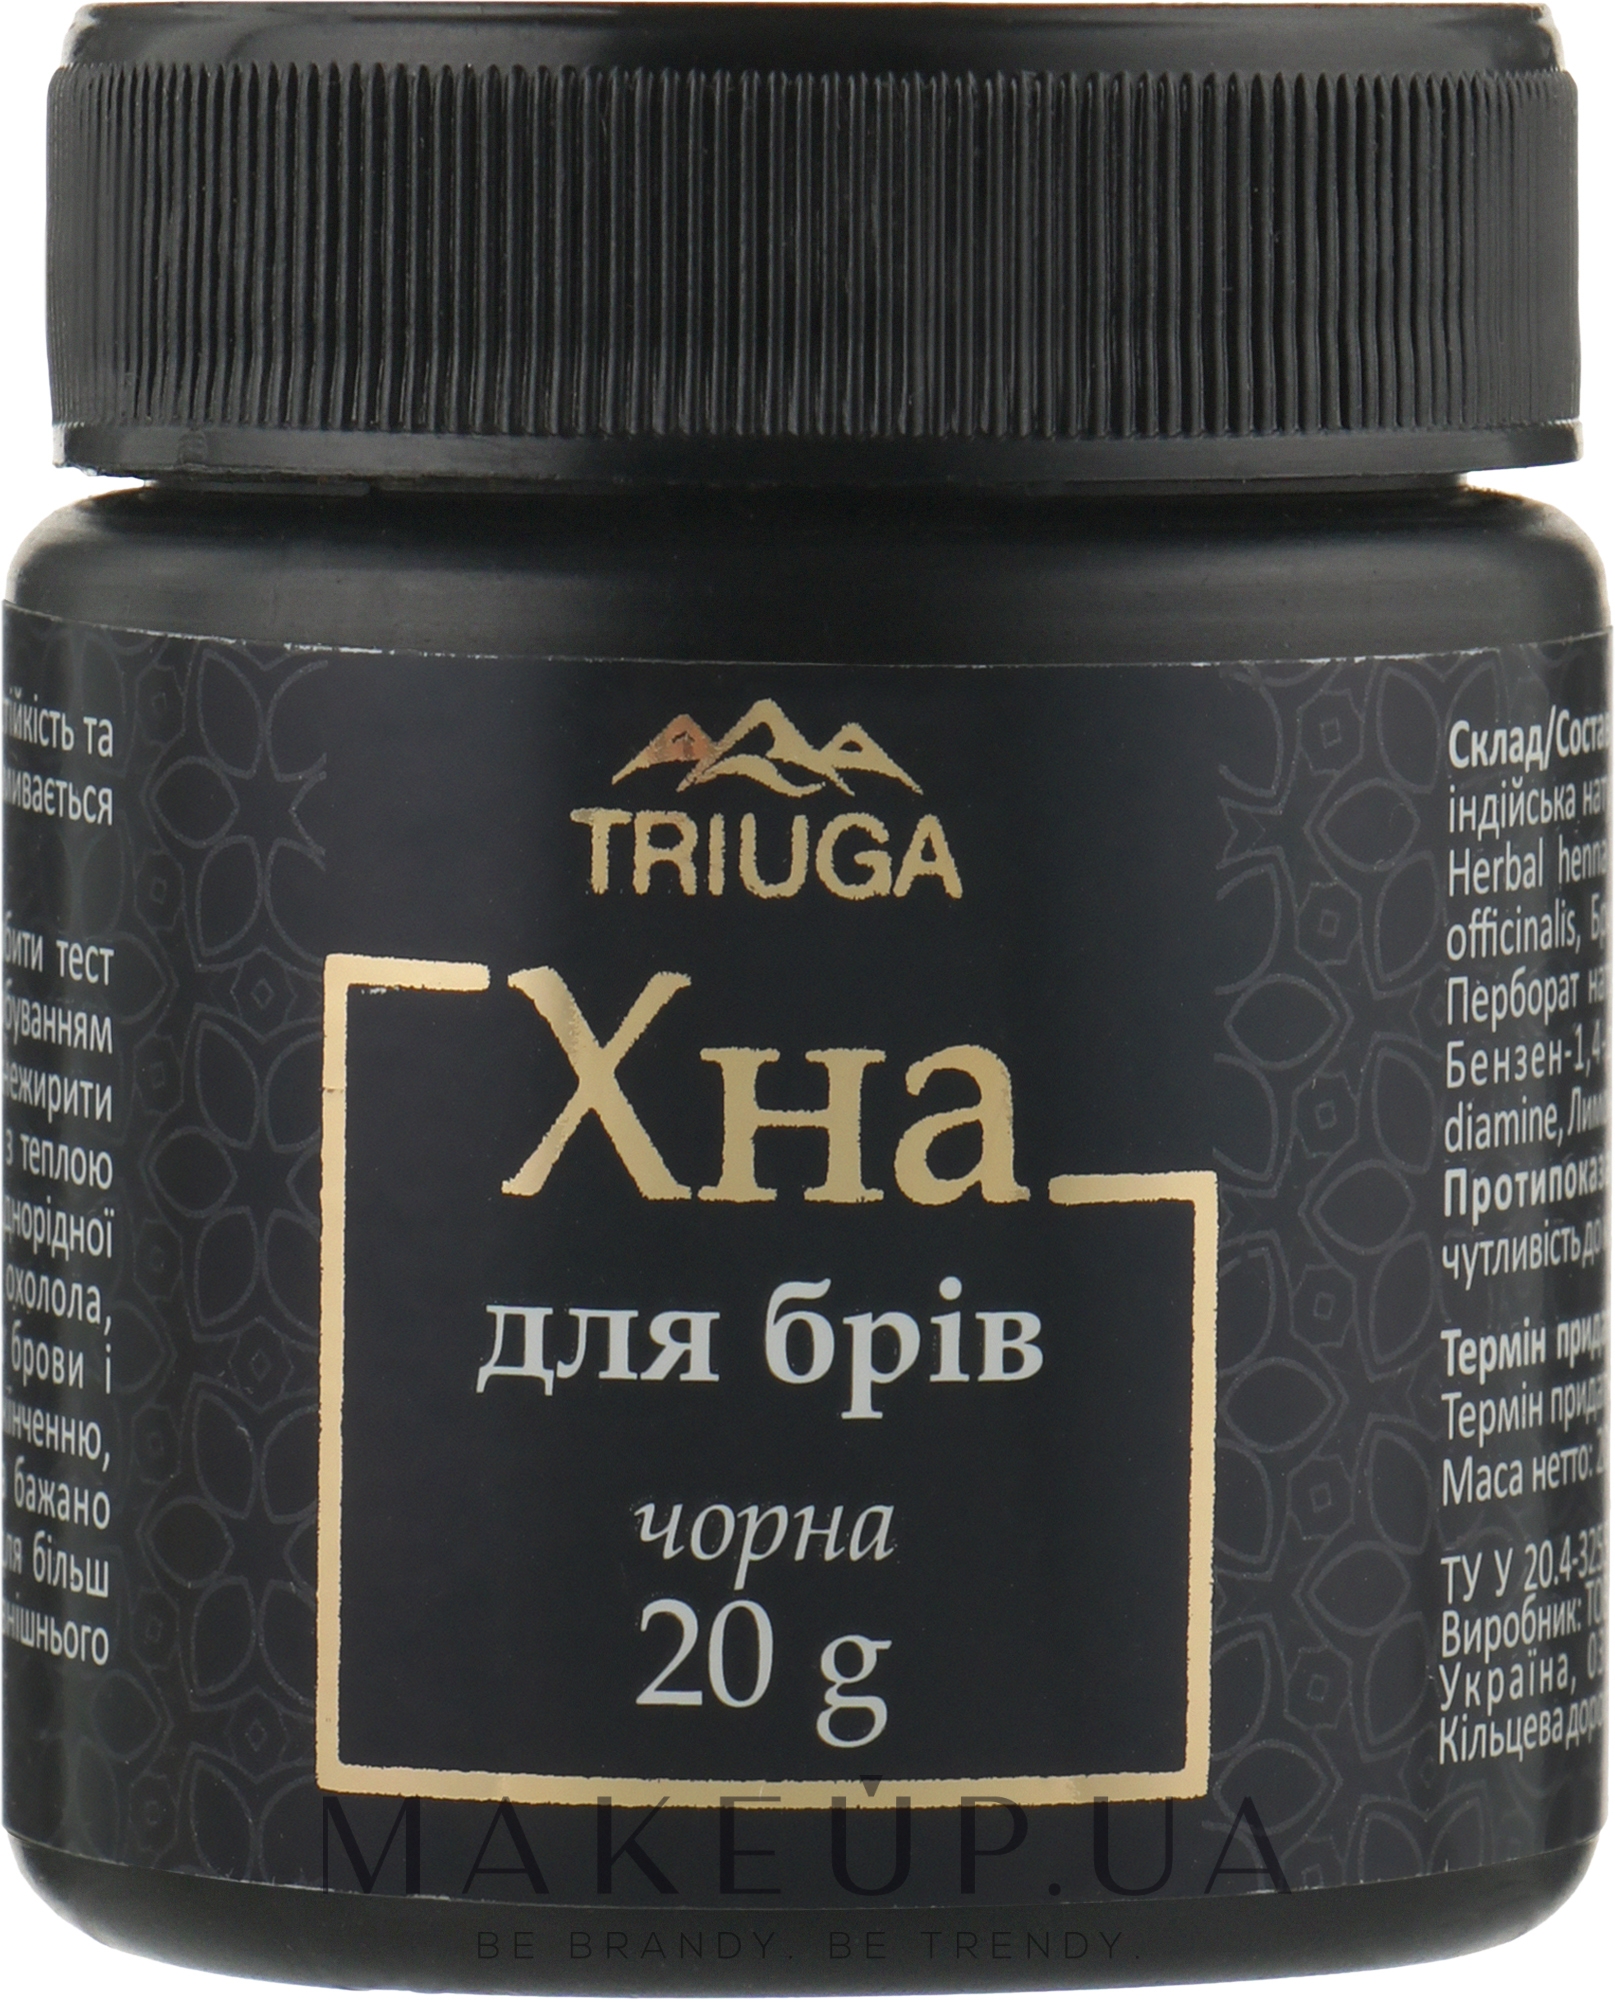 Triuga Herbal - Аюрведична фарба на основі хни для брів, вусів, у порошку — фото Черный